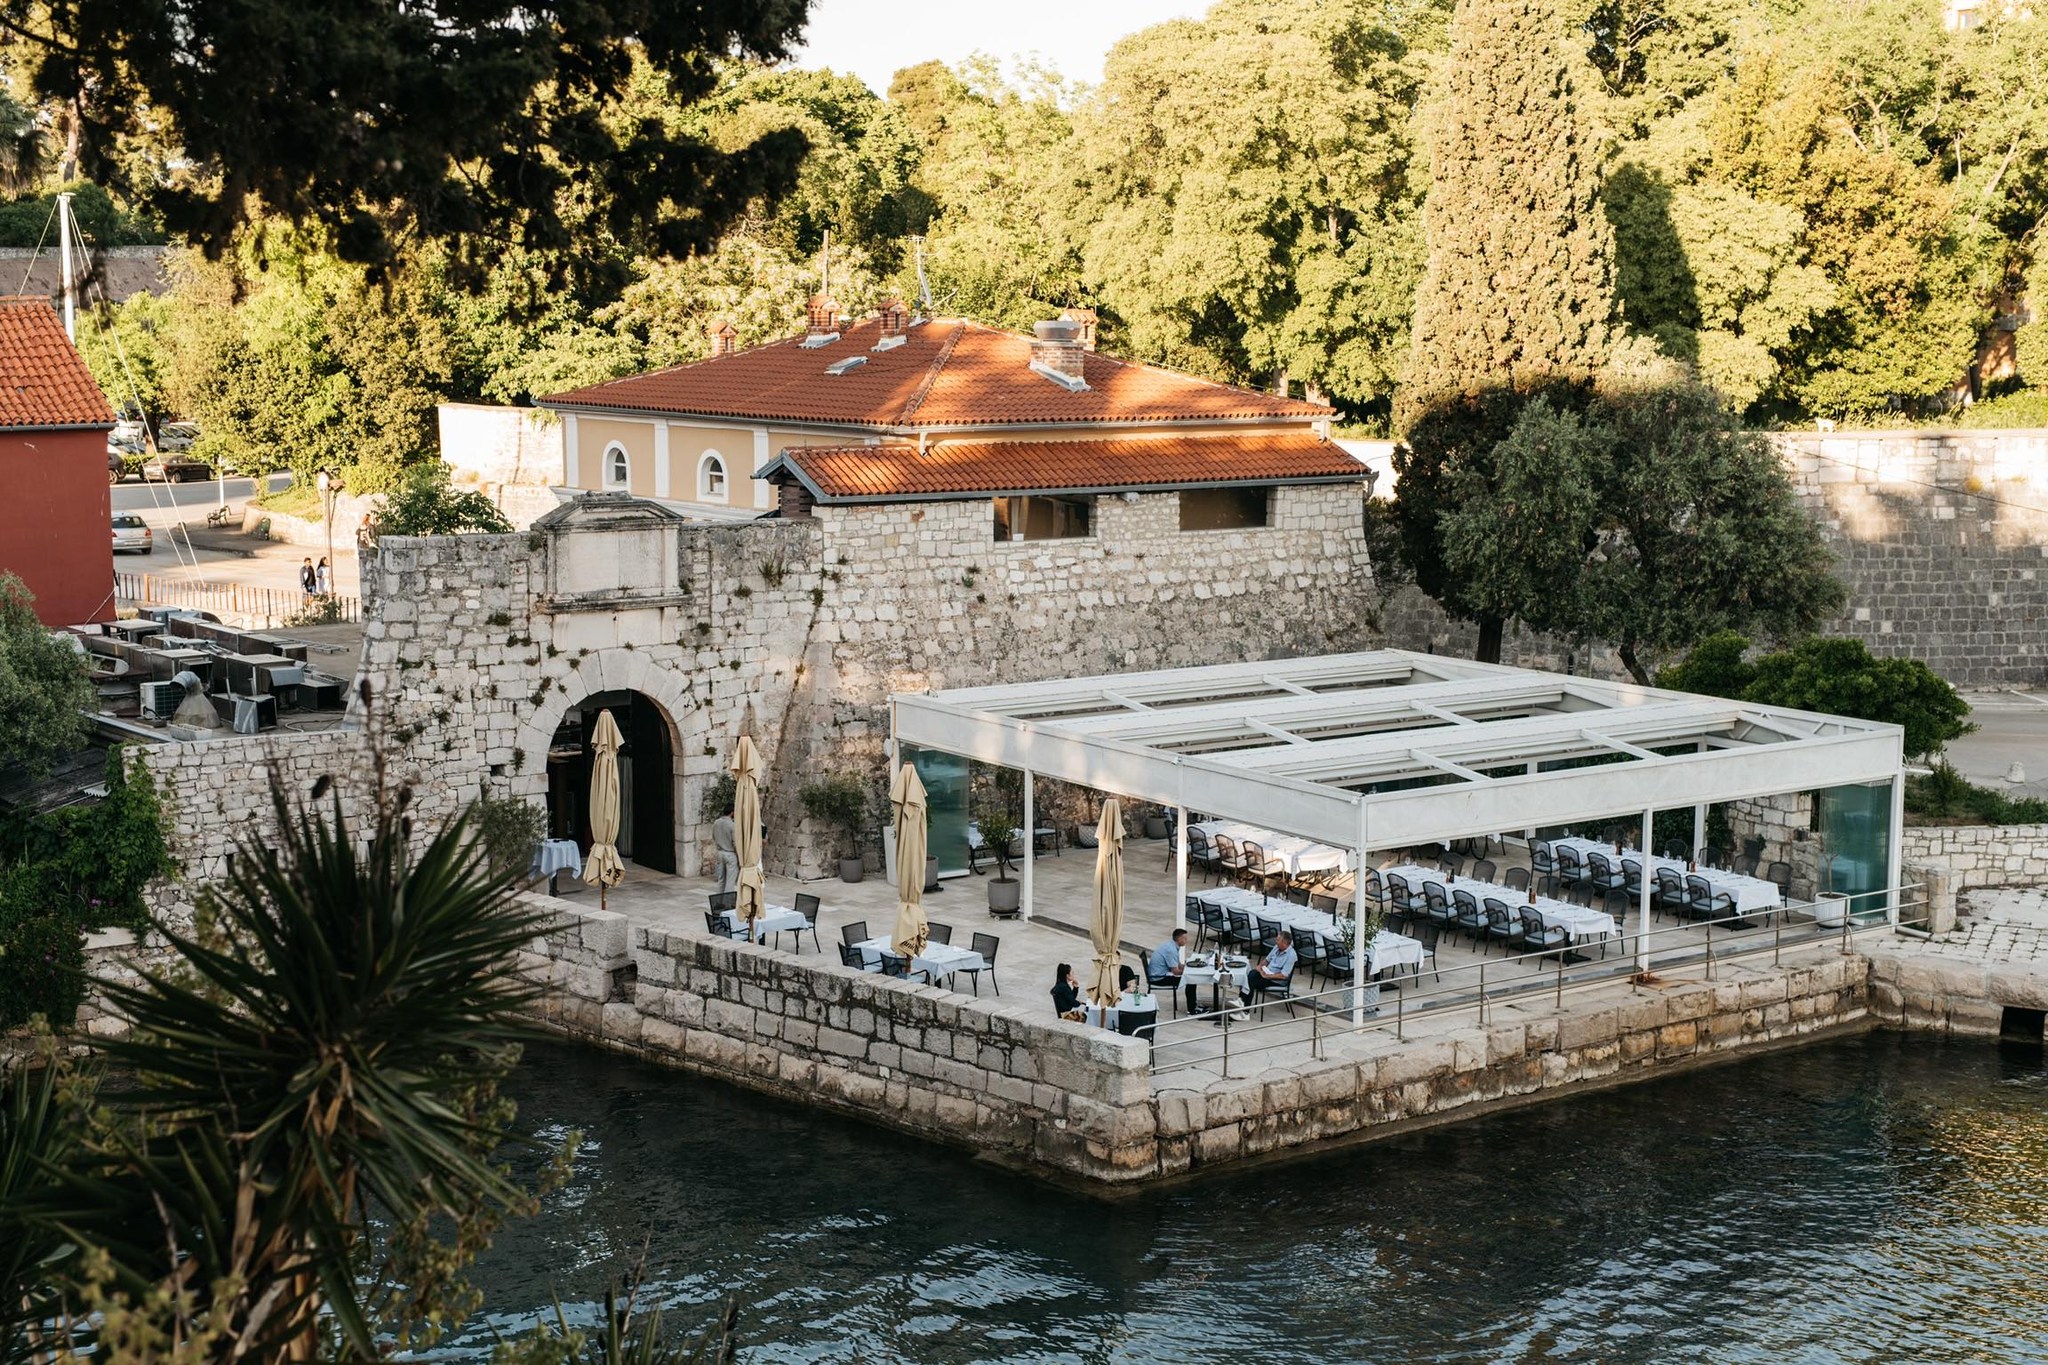 Foša - Most Instagrammable restaurants in Zadar